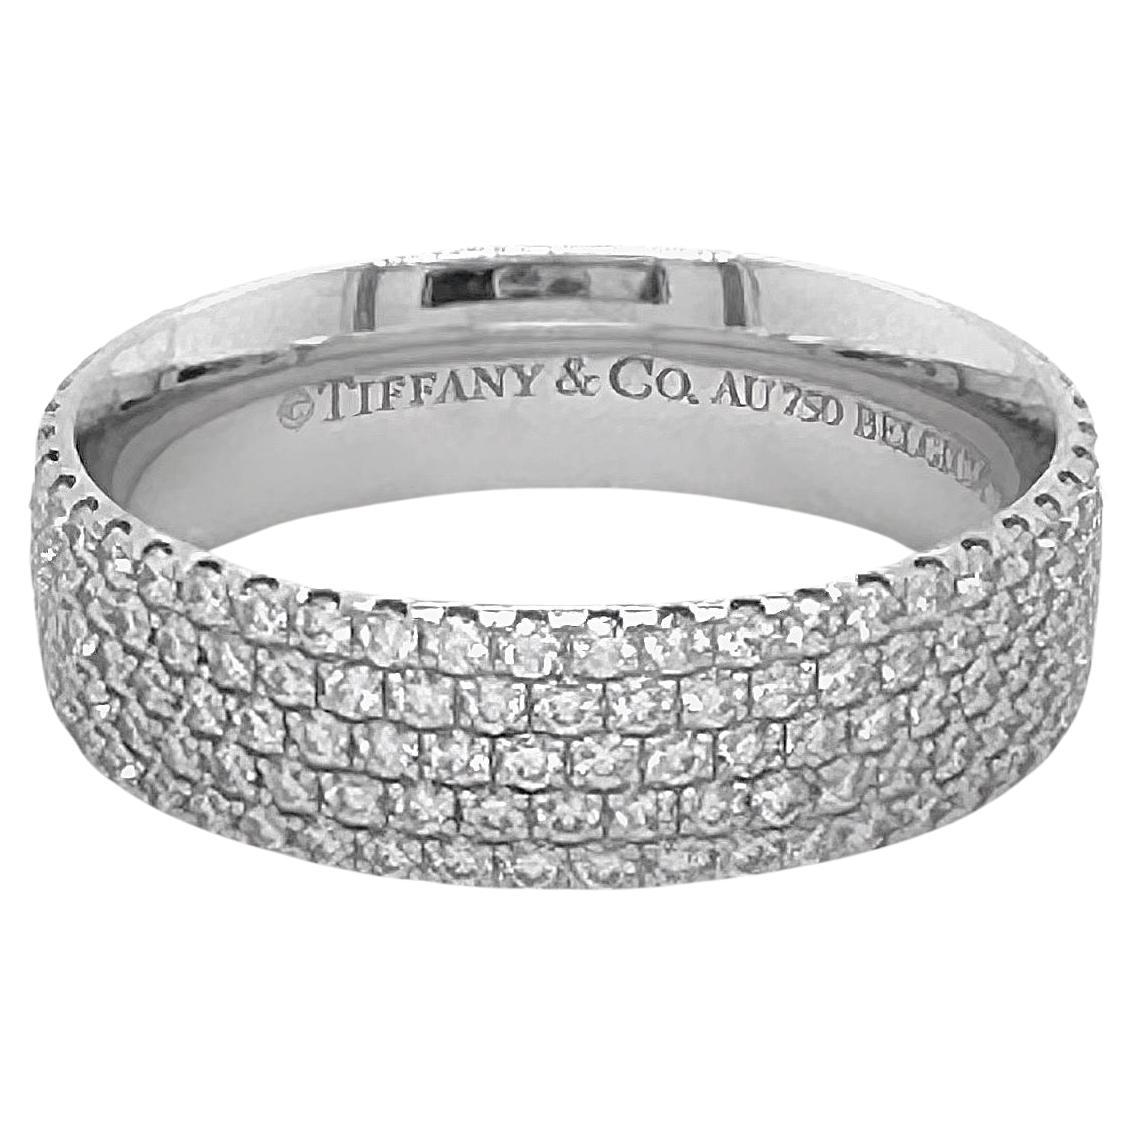 Tiffany & Co Metro 5 Row Diamond 0.90 TCW Band in 18 Karat White Gold